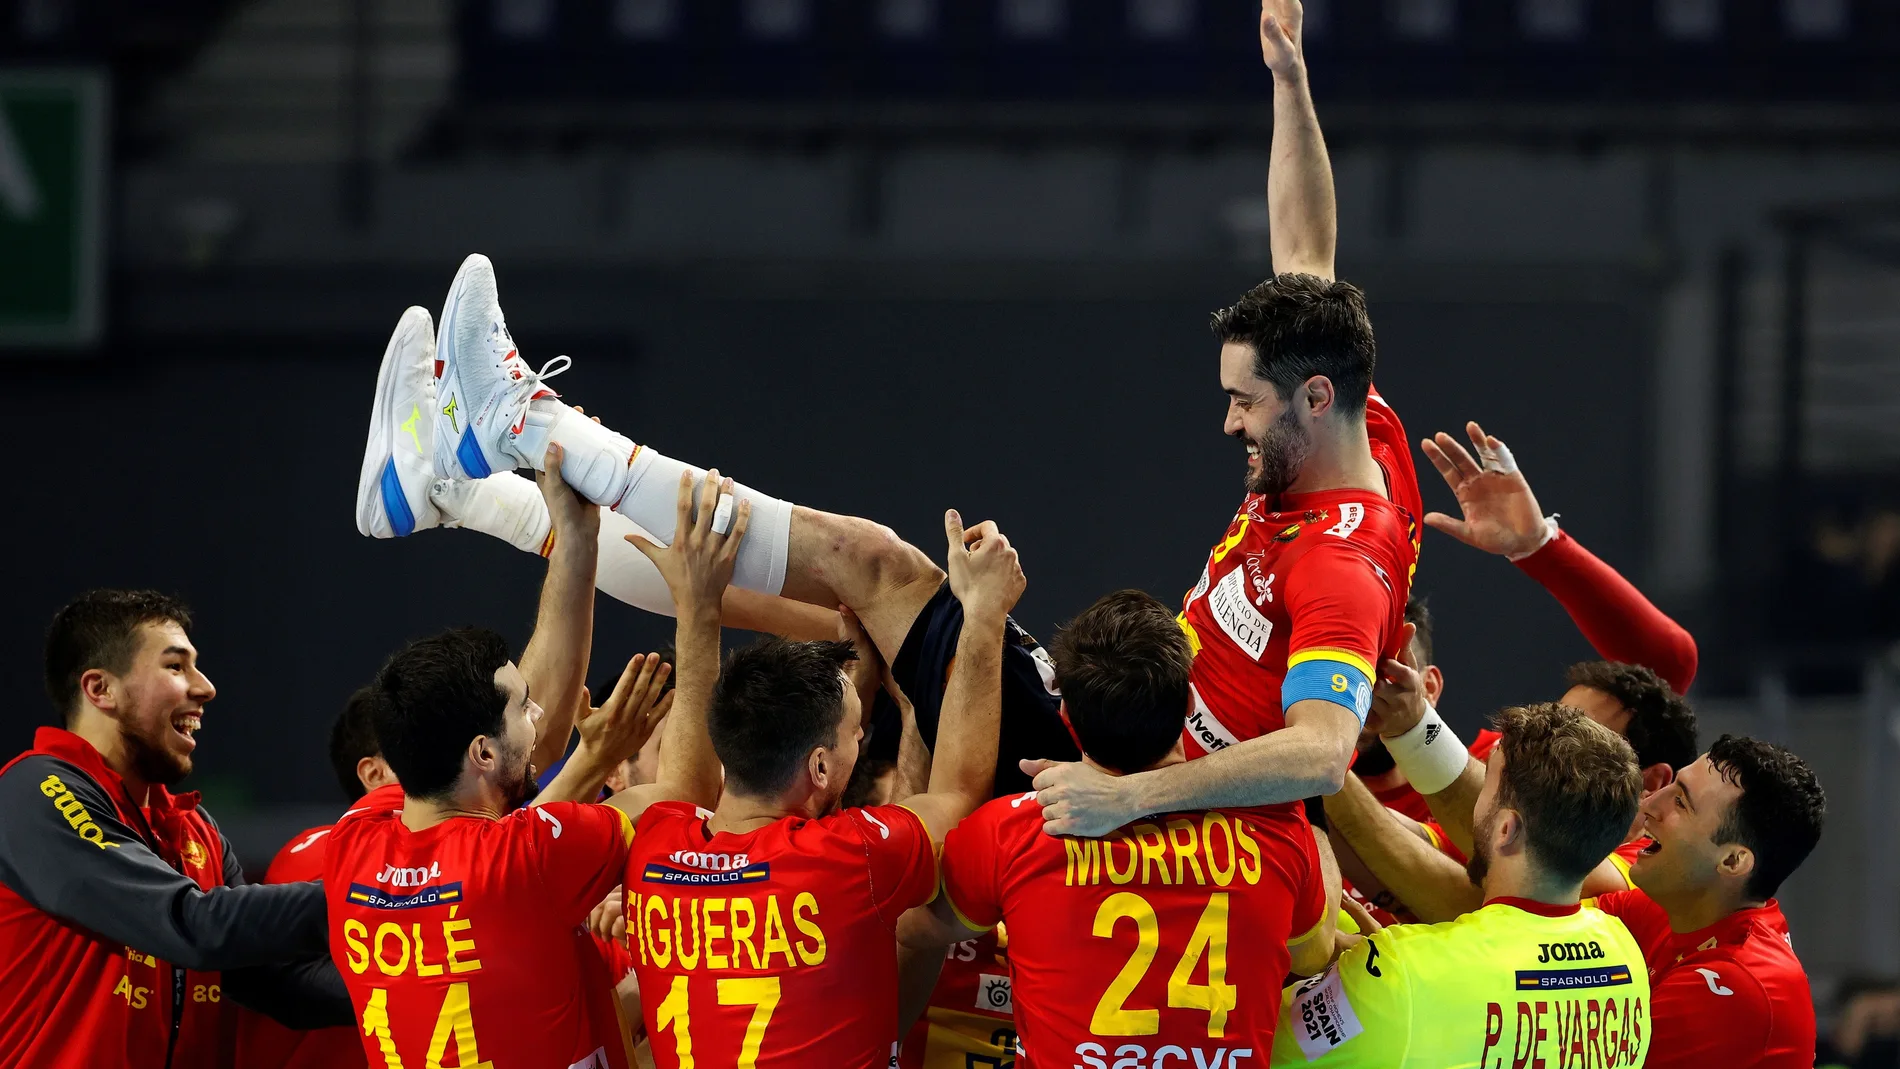 El jugador de la selección española Raúl Entrerríos es homenajeado por sus compañeros tras llegar al récord de 281 partidos con los Hispanos